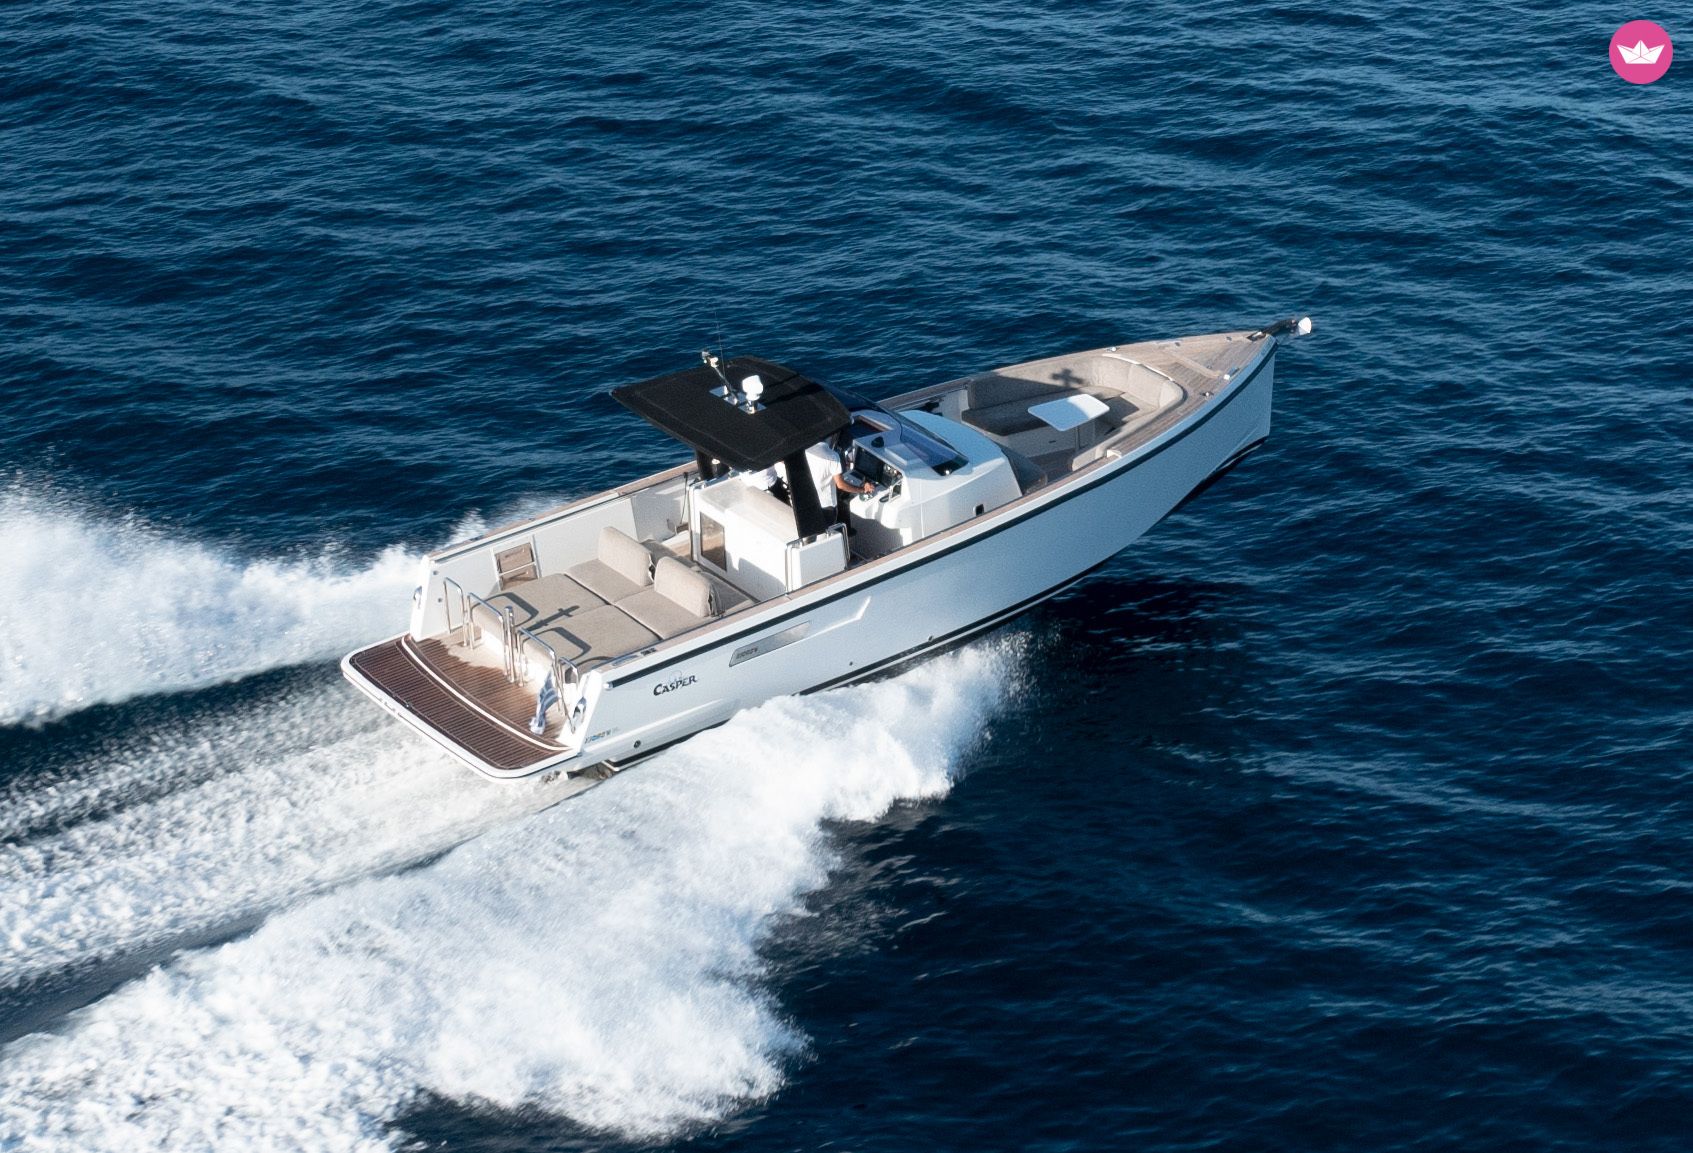 CASPER - Yacht Charter & Boat Rental